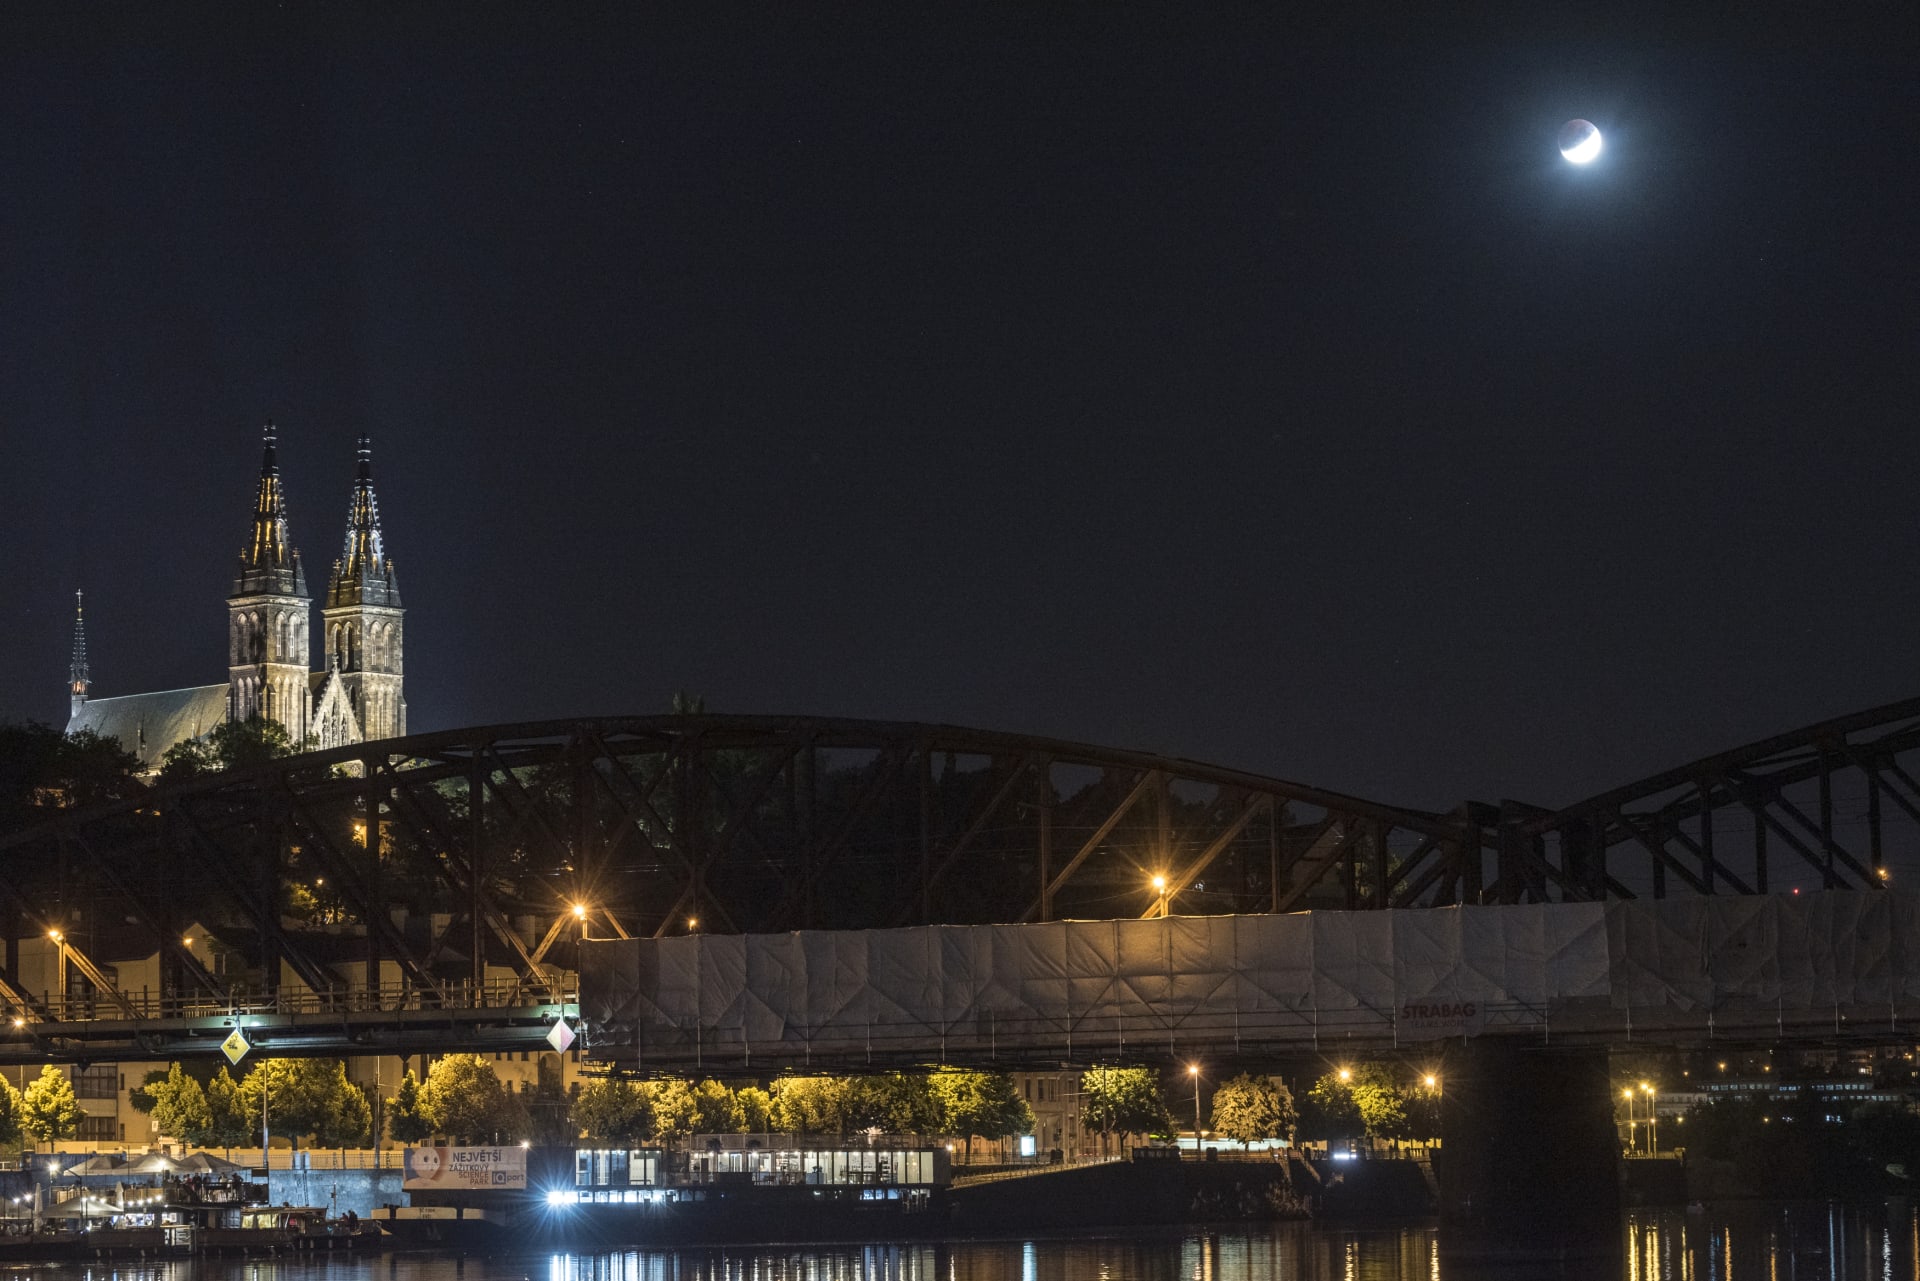 Zatmění Měsíce bylo v červenci 2019 zřetelně viditelné i v přesvícené Praze.